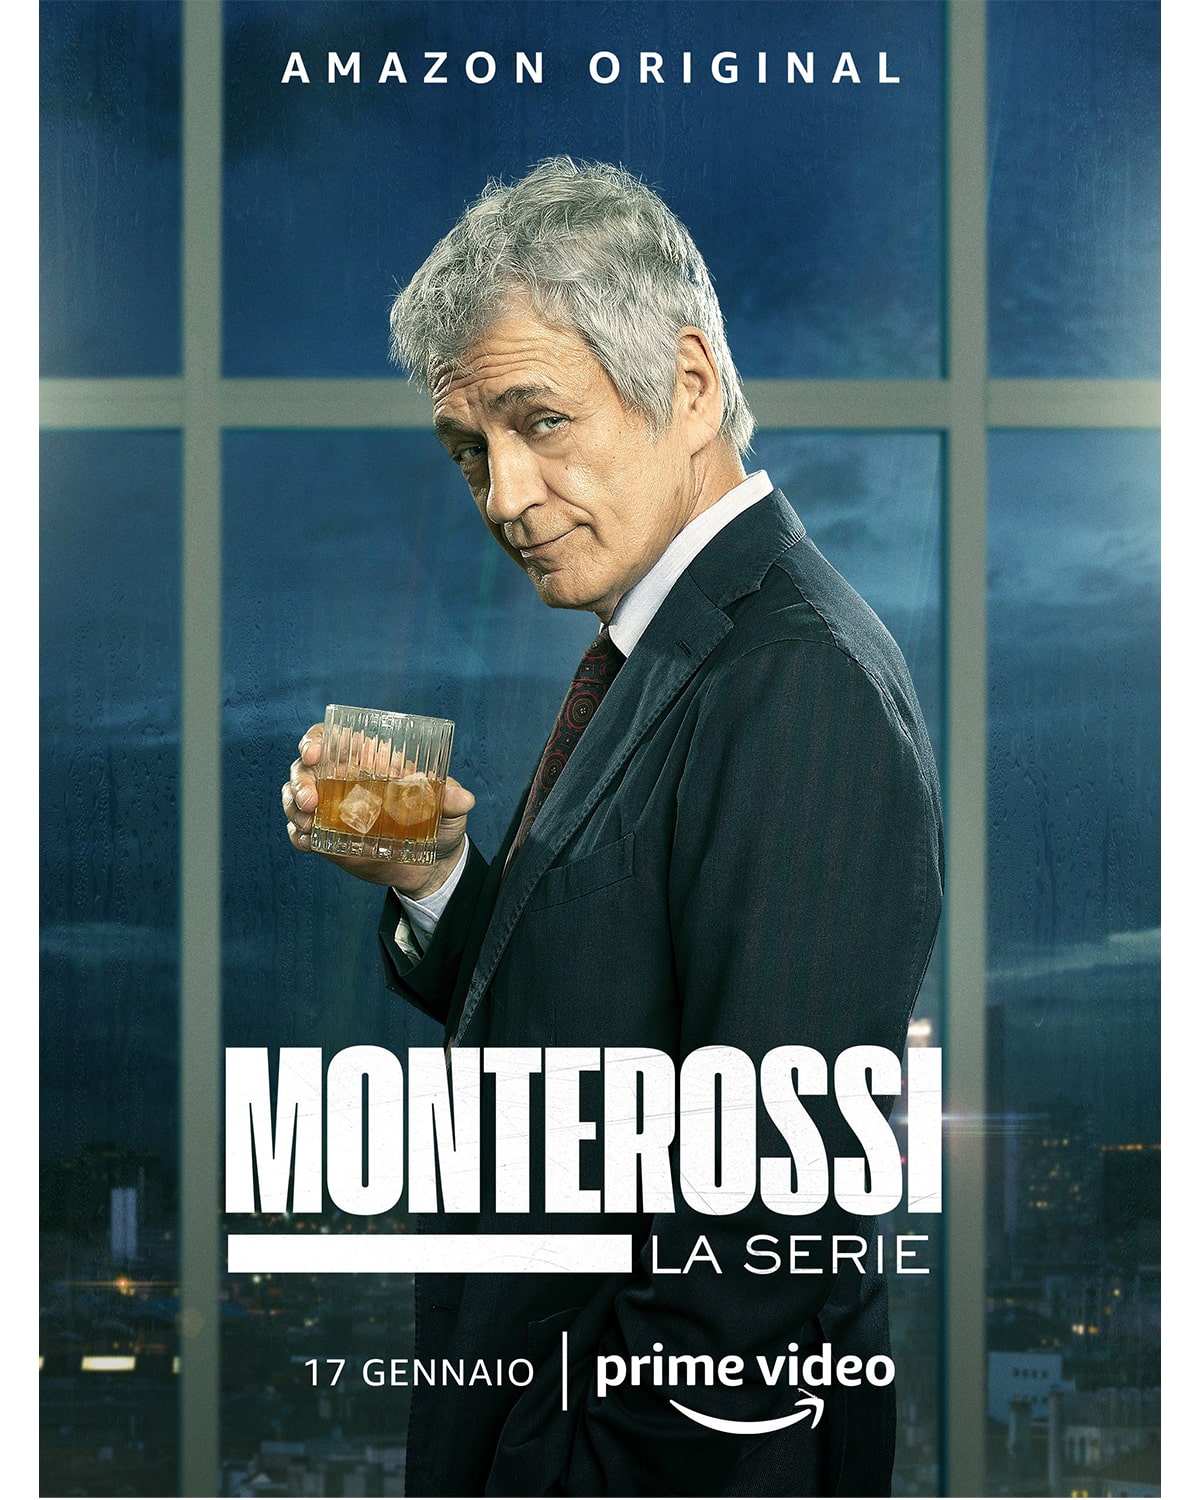 Locandina di Monterossi, serie tv in arrivo nel 2022 e tratta dai libri di Alessandro Robecchi